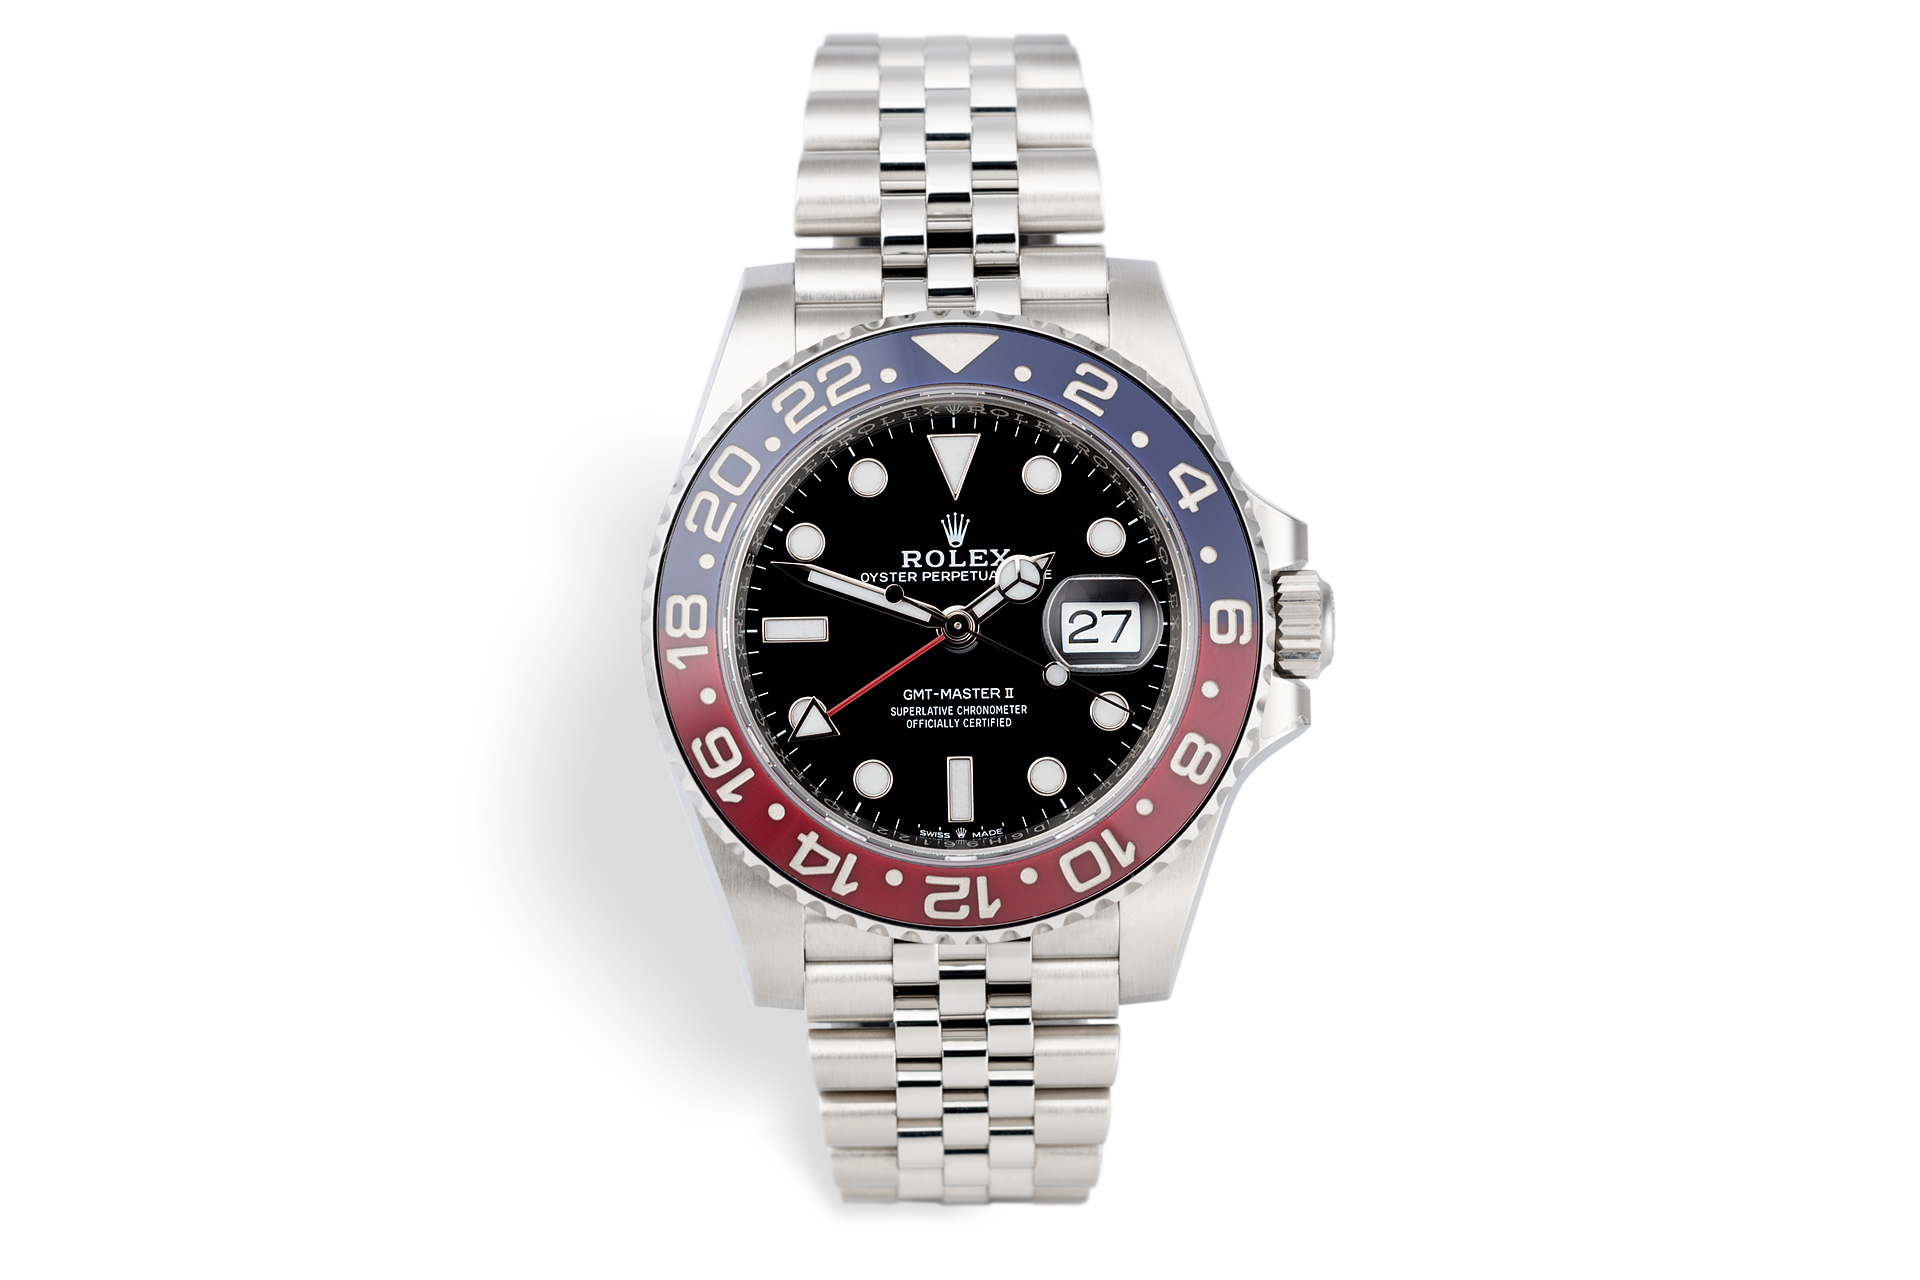 Rolex Gmt Master Ii Watches Ref blro Brand New 5 Year Warranty The Watch Club